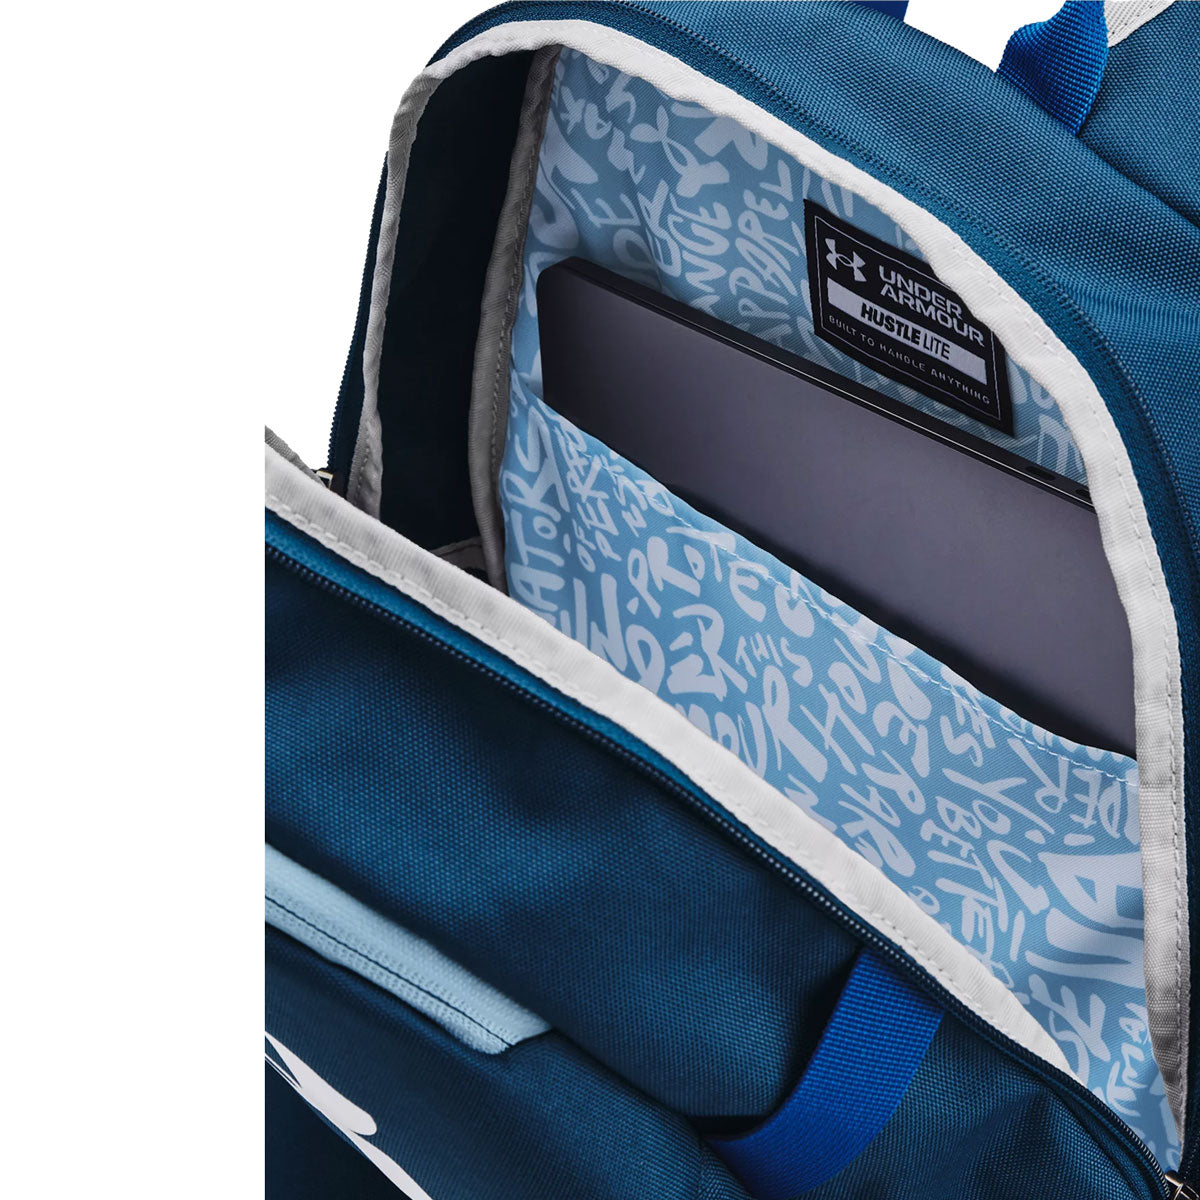 Under Armour Hustle Lite Backpack - Varsity Blue/Blizzard/White